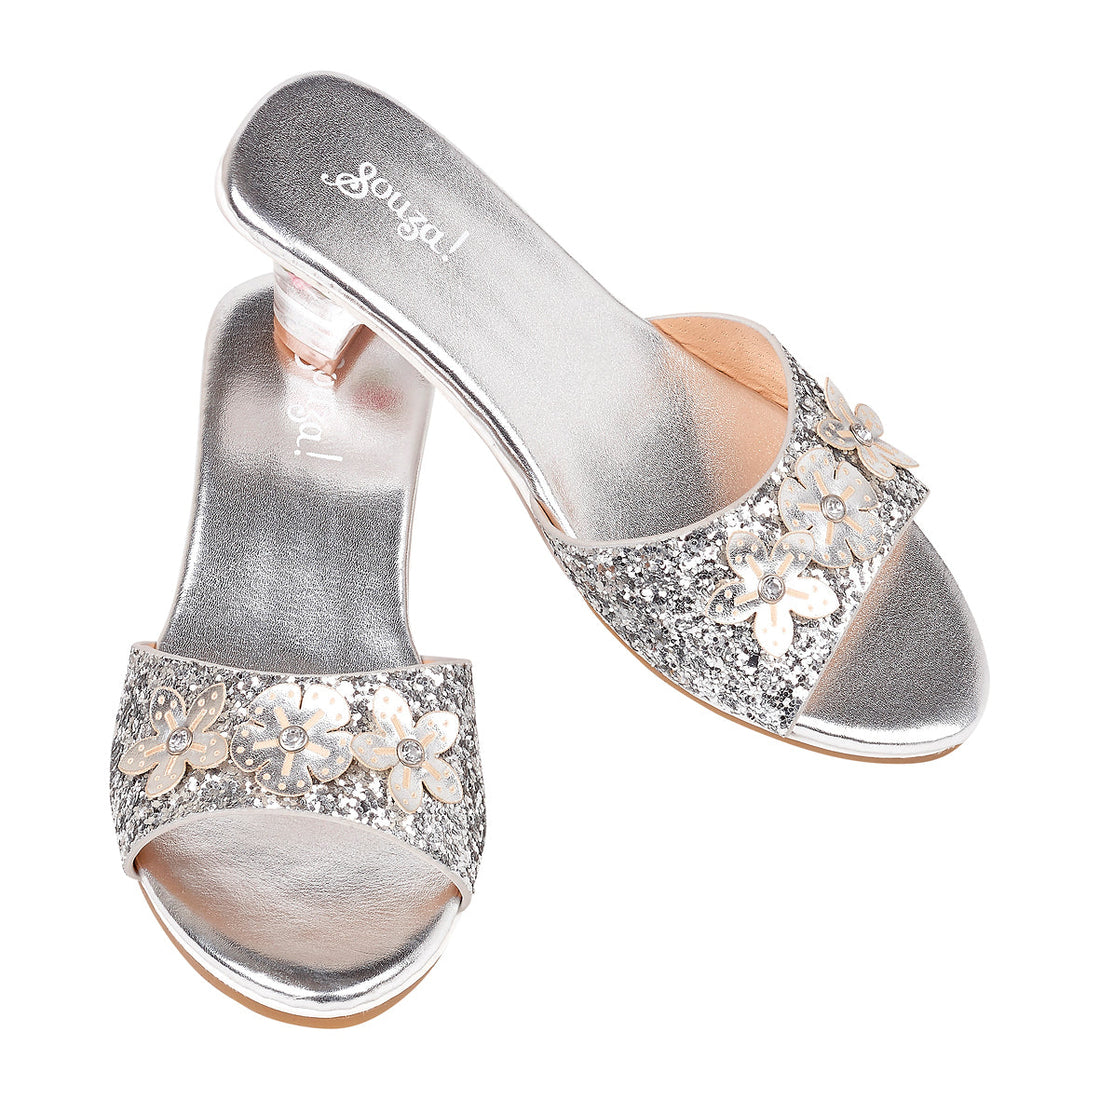 souza-slipper-h-heel-mariona-silver-metallic-souz-105003-